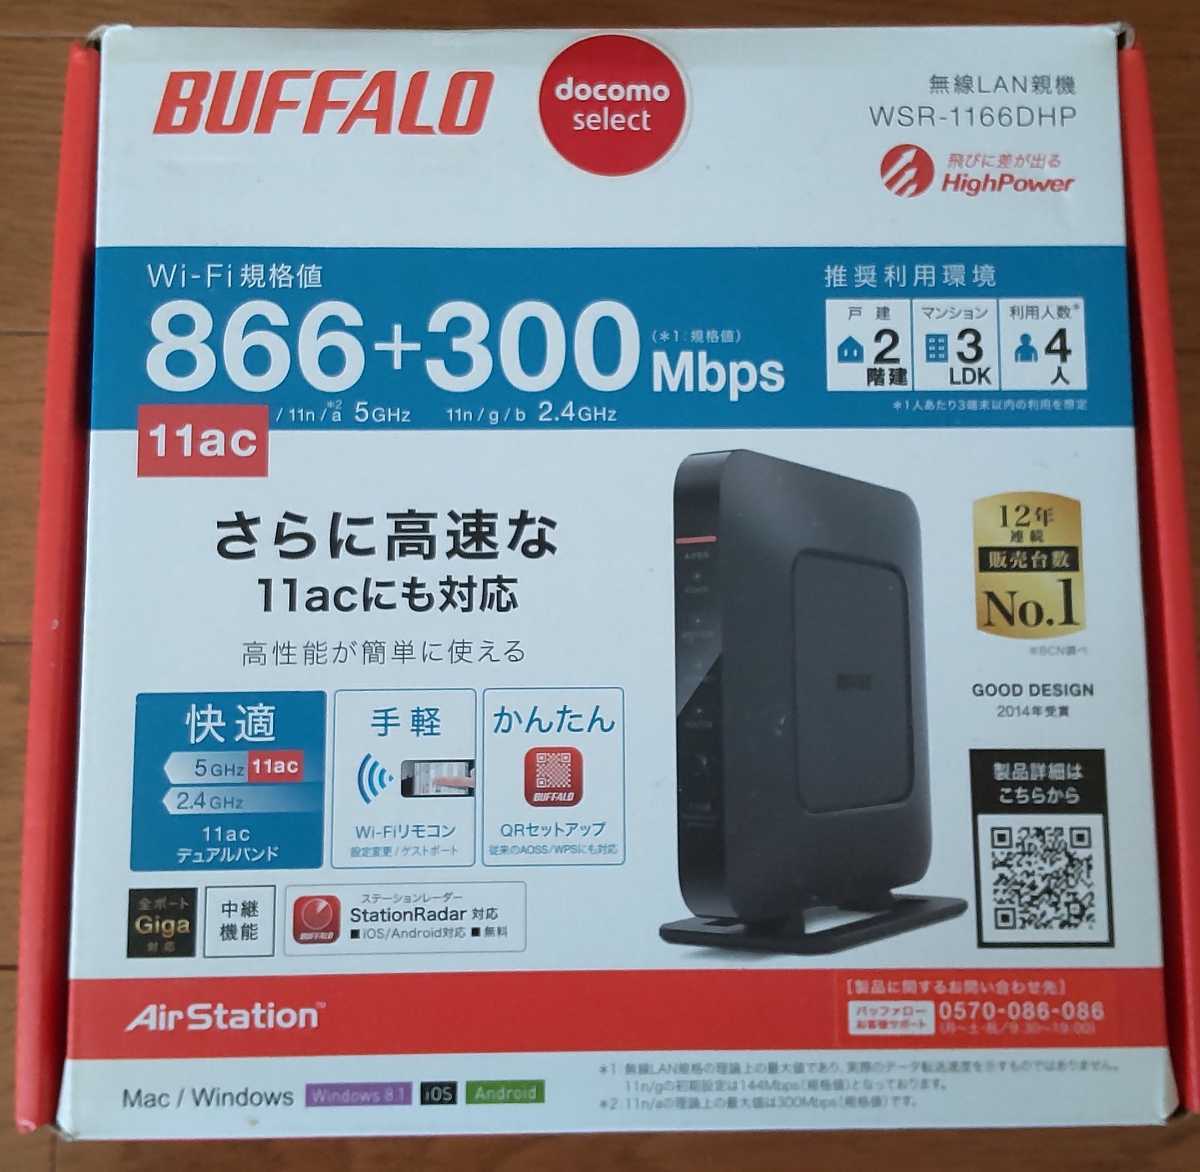 BUFFALO バッファロー 無線LAN親機 無線LANルーター Wi-Fi WSR-1166DHP 1円 1スタ_画像1